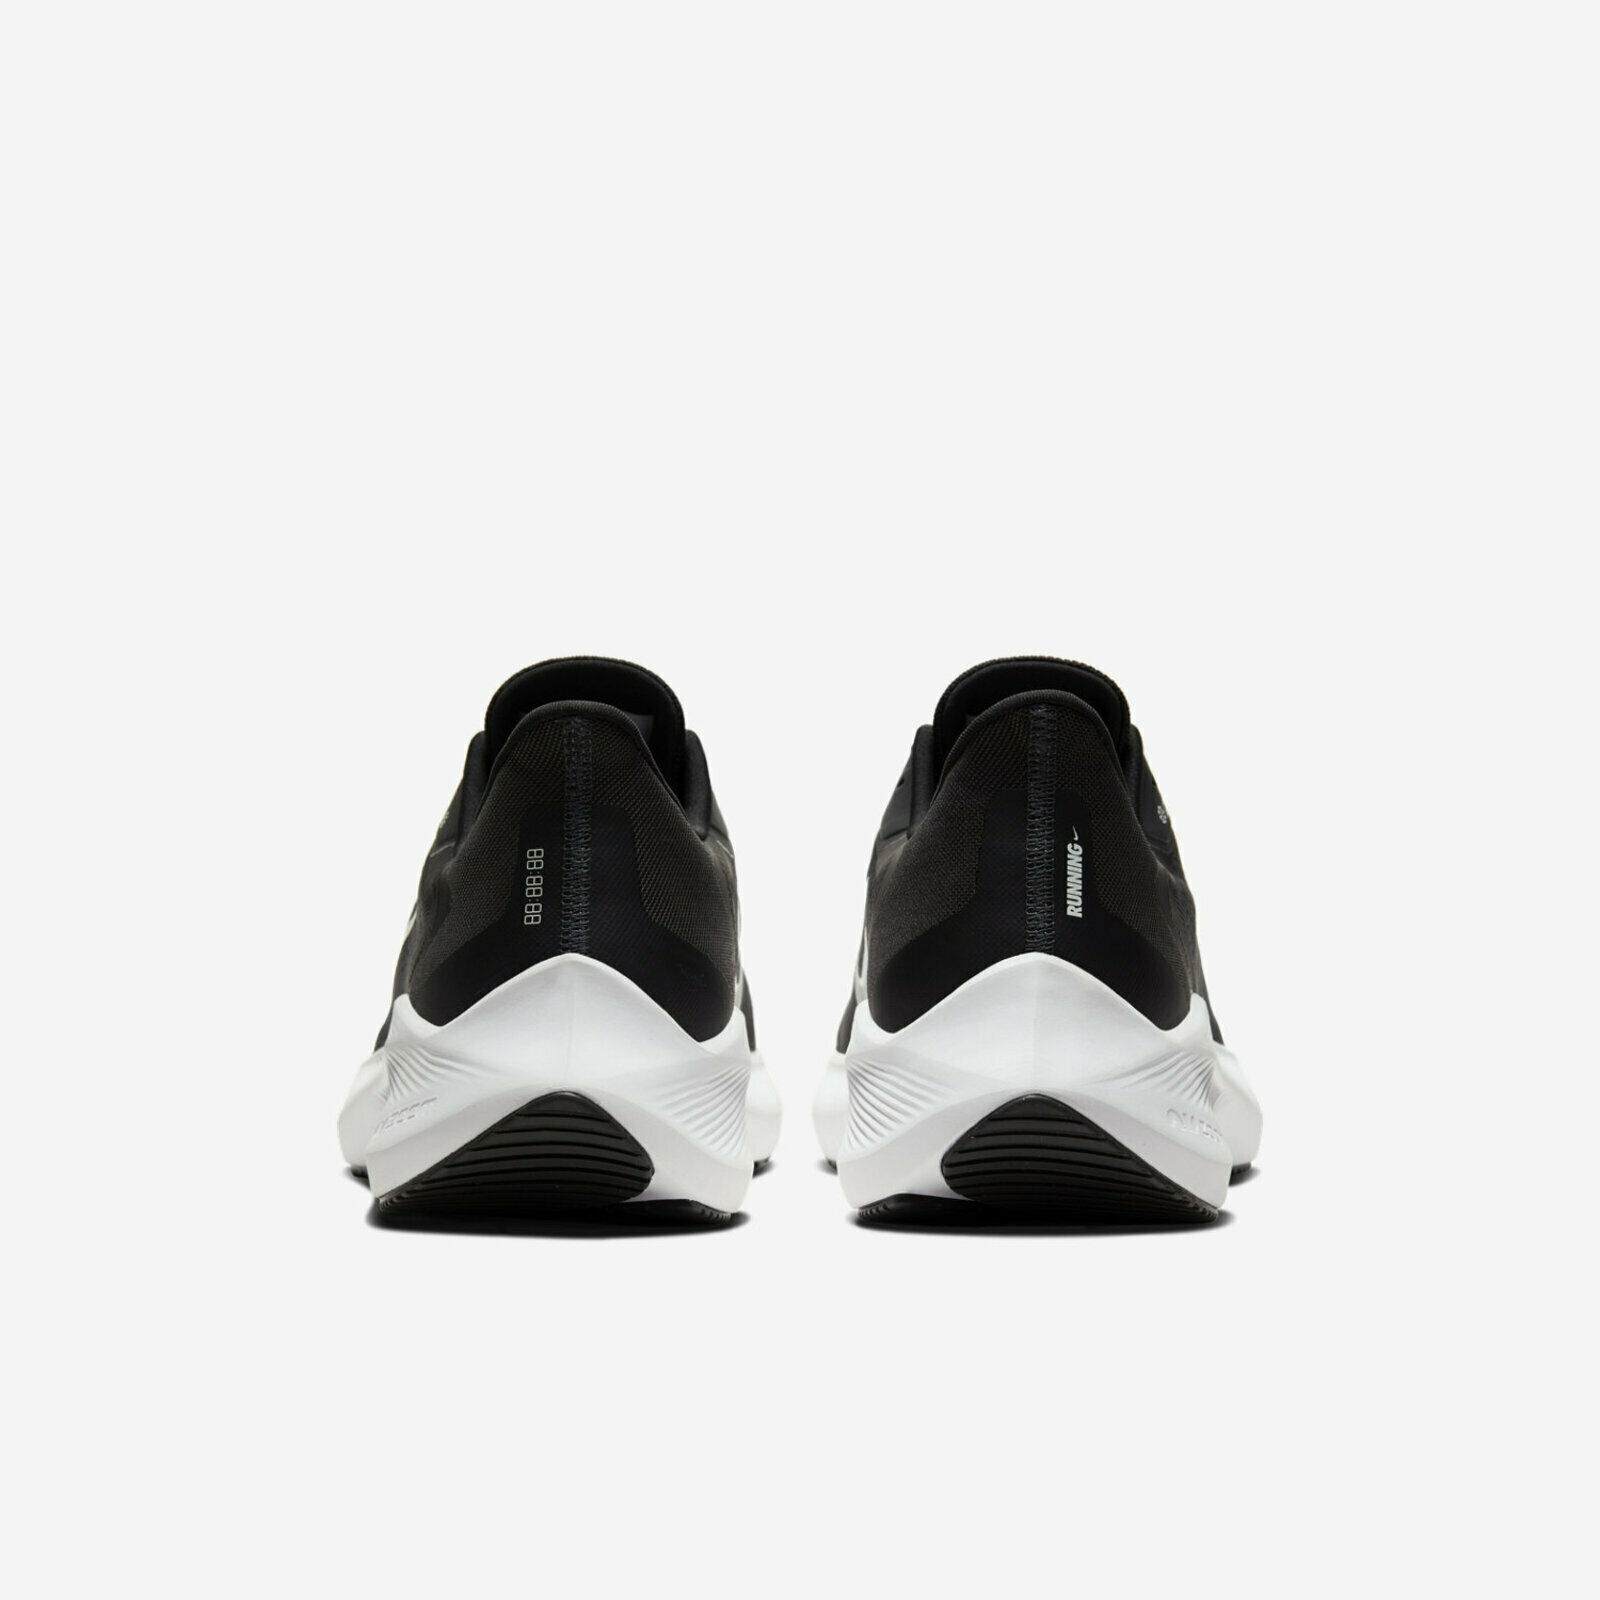 ลองดูภาพสินค้า รองเท้าวิ่ง Winflo 7 “มี8สีให้เลือก" พร้อมกล่อง FULL SET (เบอร์36-45) *จัดส่งฟรี ส่งเร็วมาก เก็บเงินปลายทาง* รองเท้าวิ่งชาย รองเท้าวิ่งหญิง